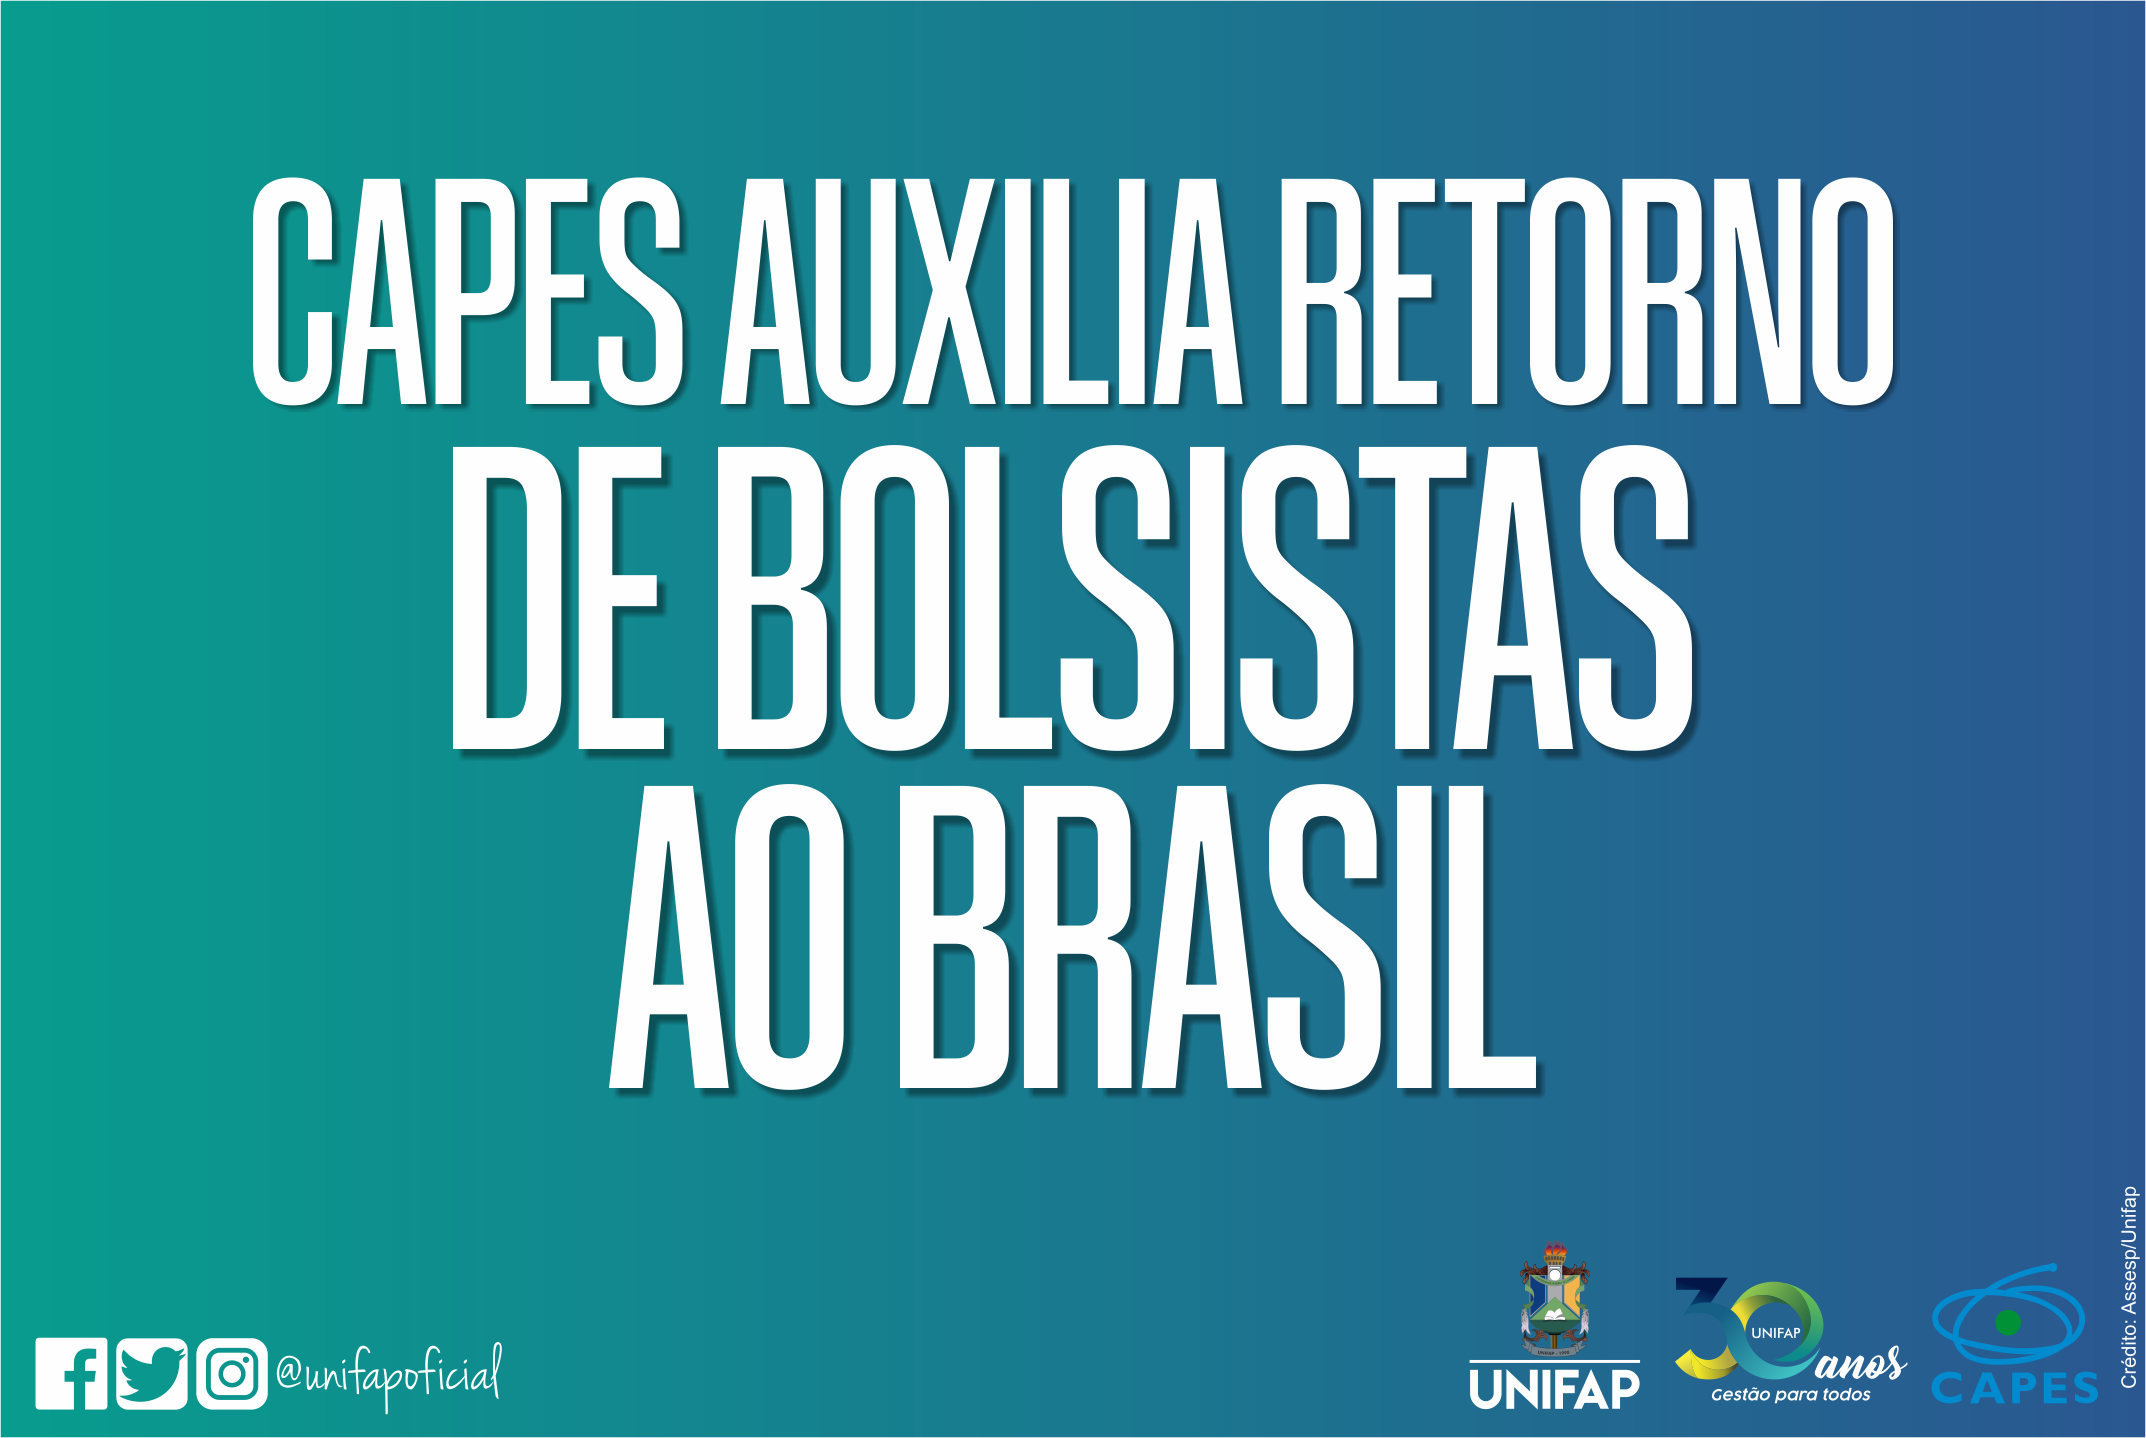 CAPES apoia retorno de pesquisadores ao Brasil durante a pandemia da COVID-19